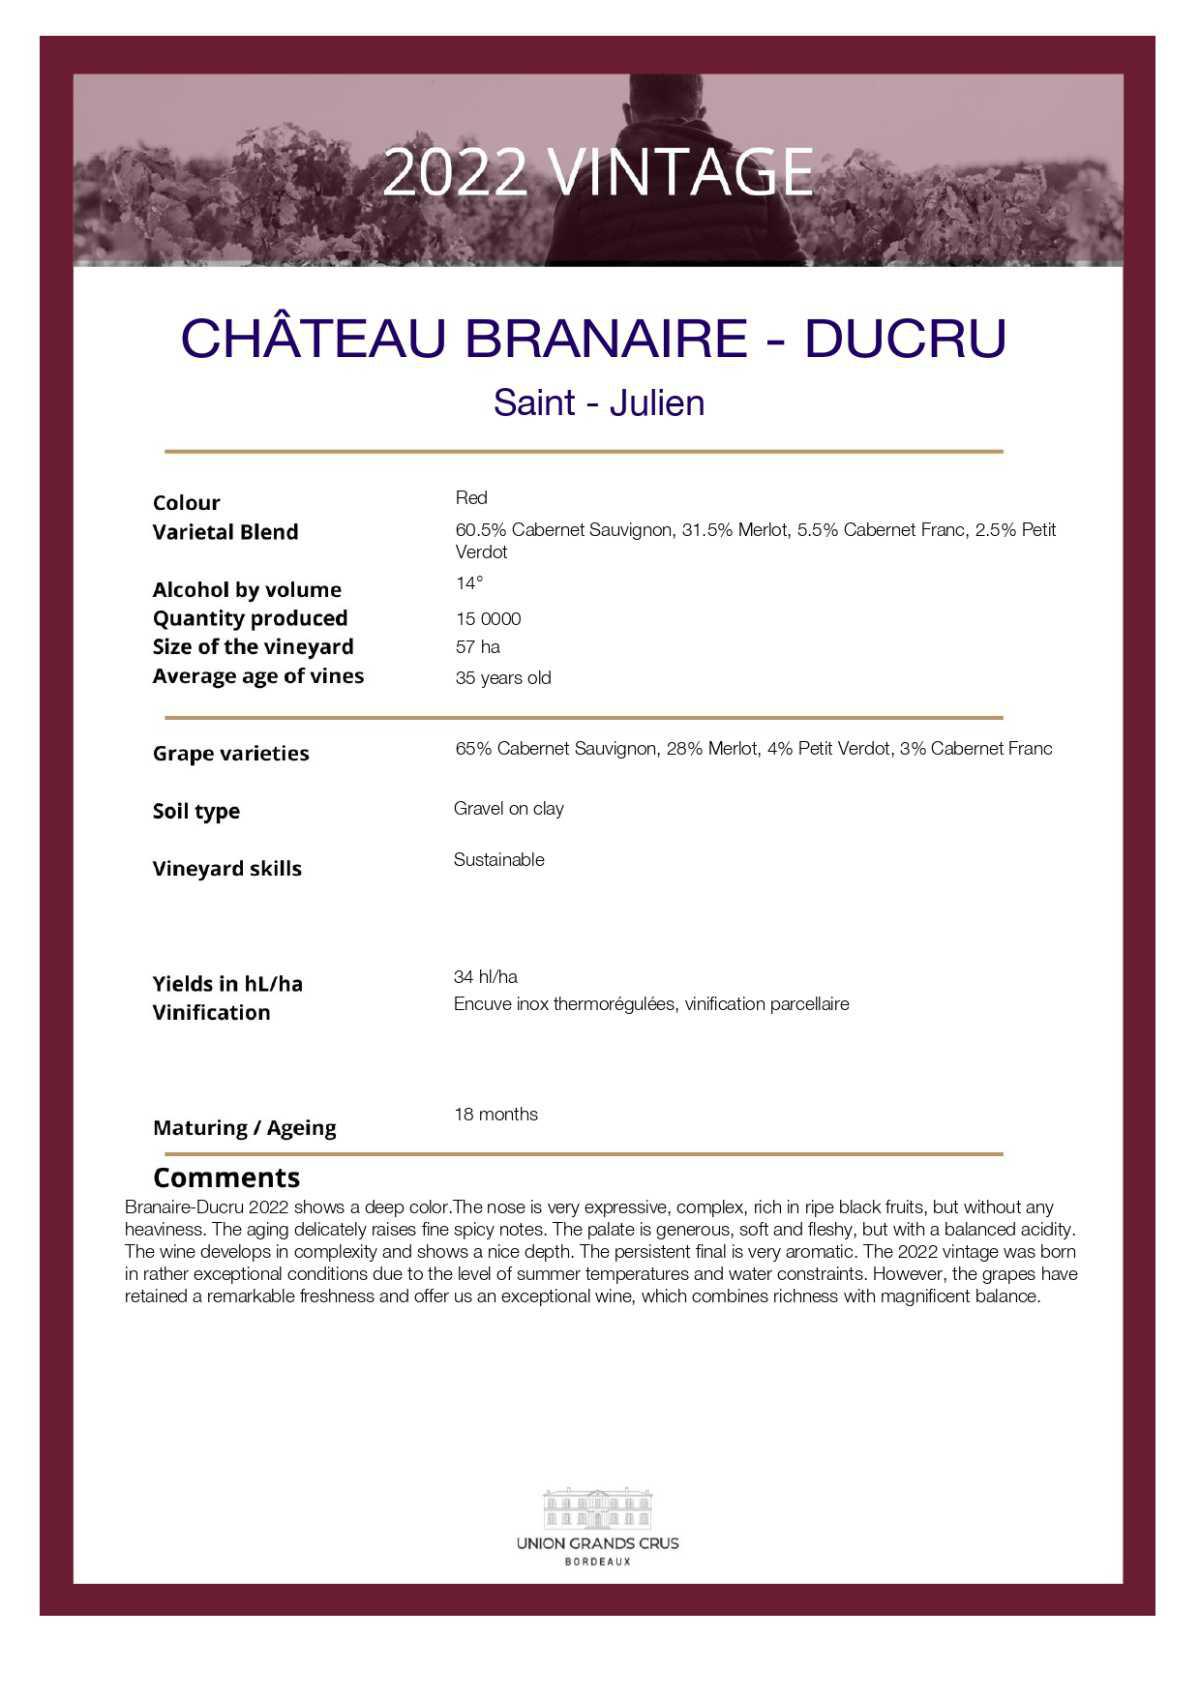  Château Branaire - Ducru 